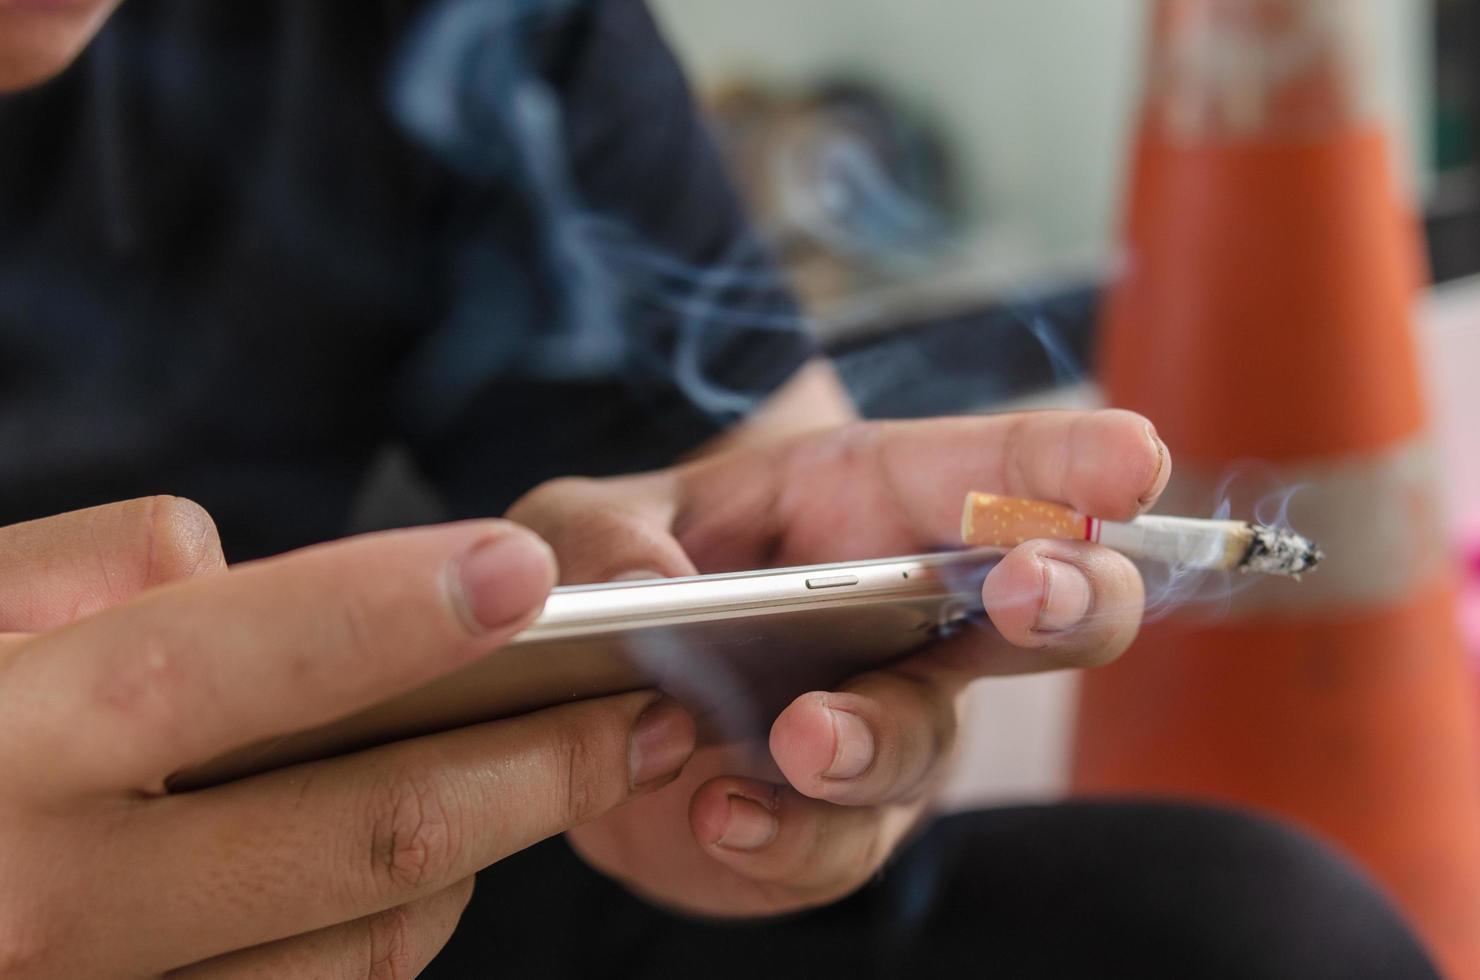 persoon die een sigaret rookt tijdens het sms'en op een slimme telefoon foto